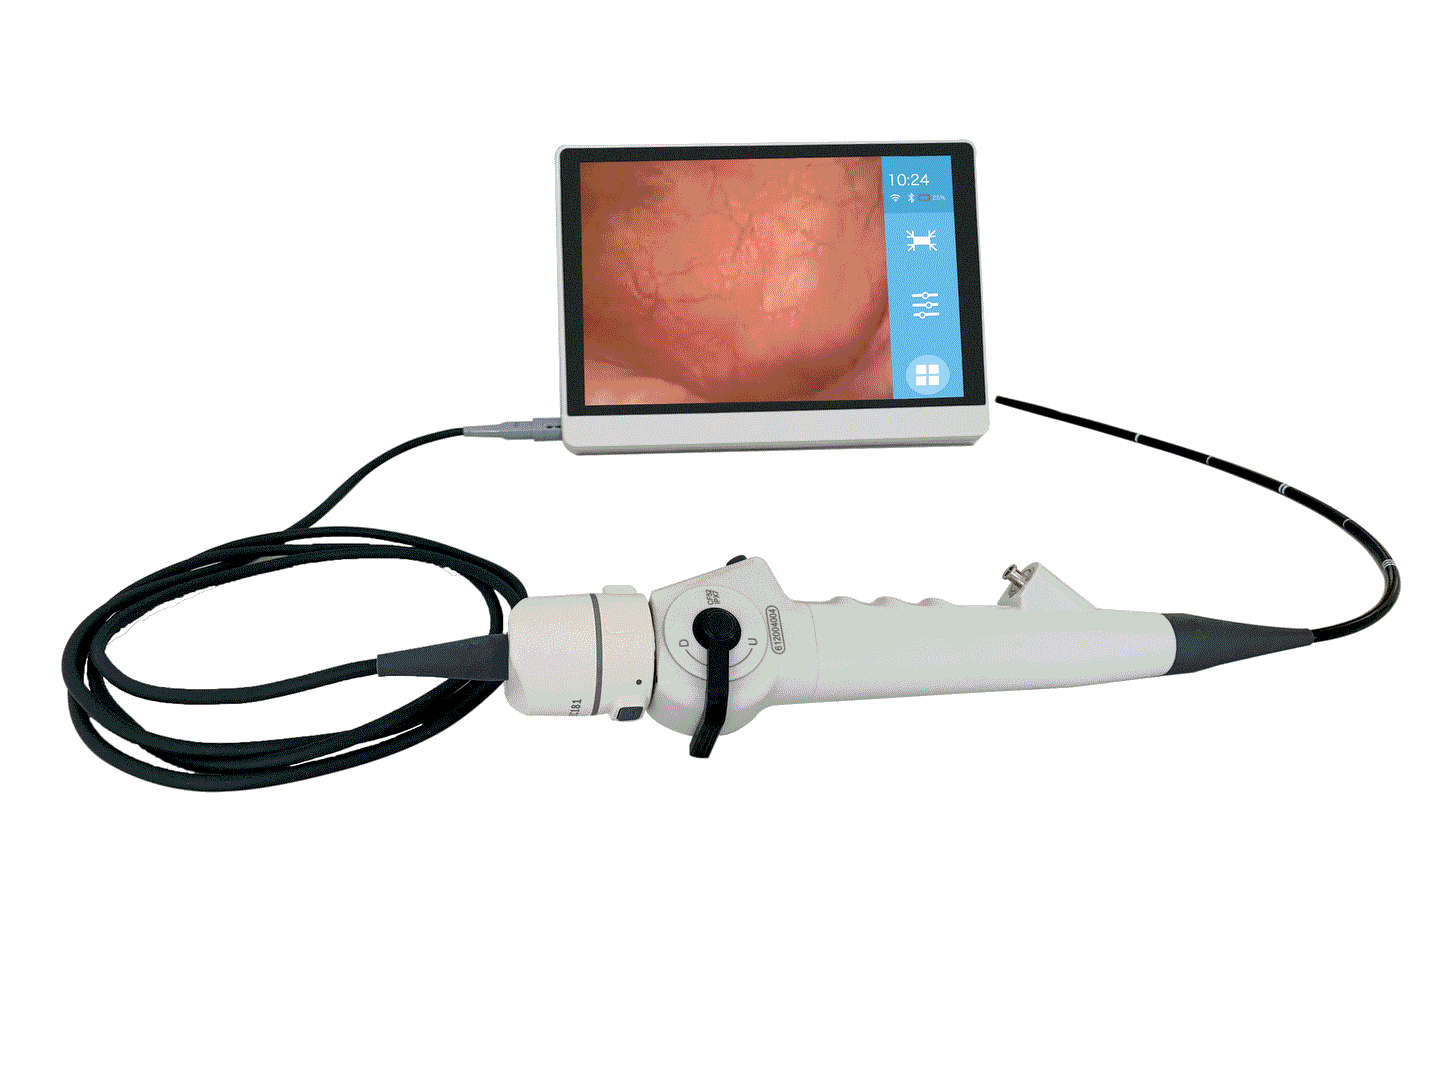 Uretero Renoscope, flexible